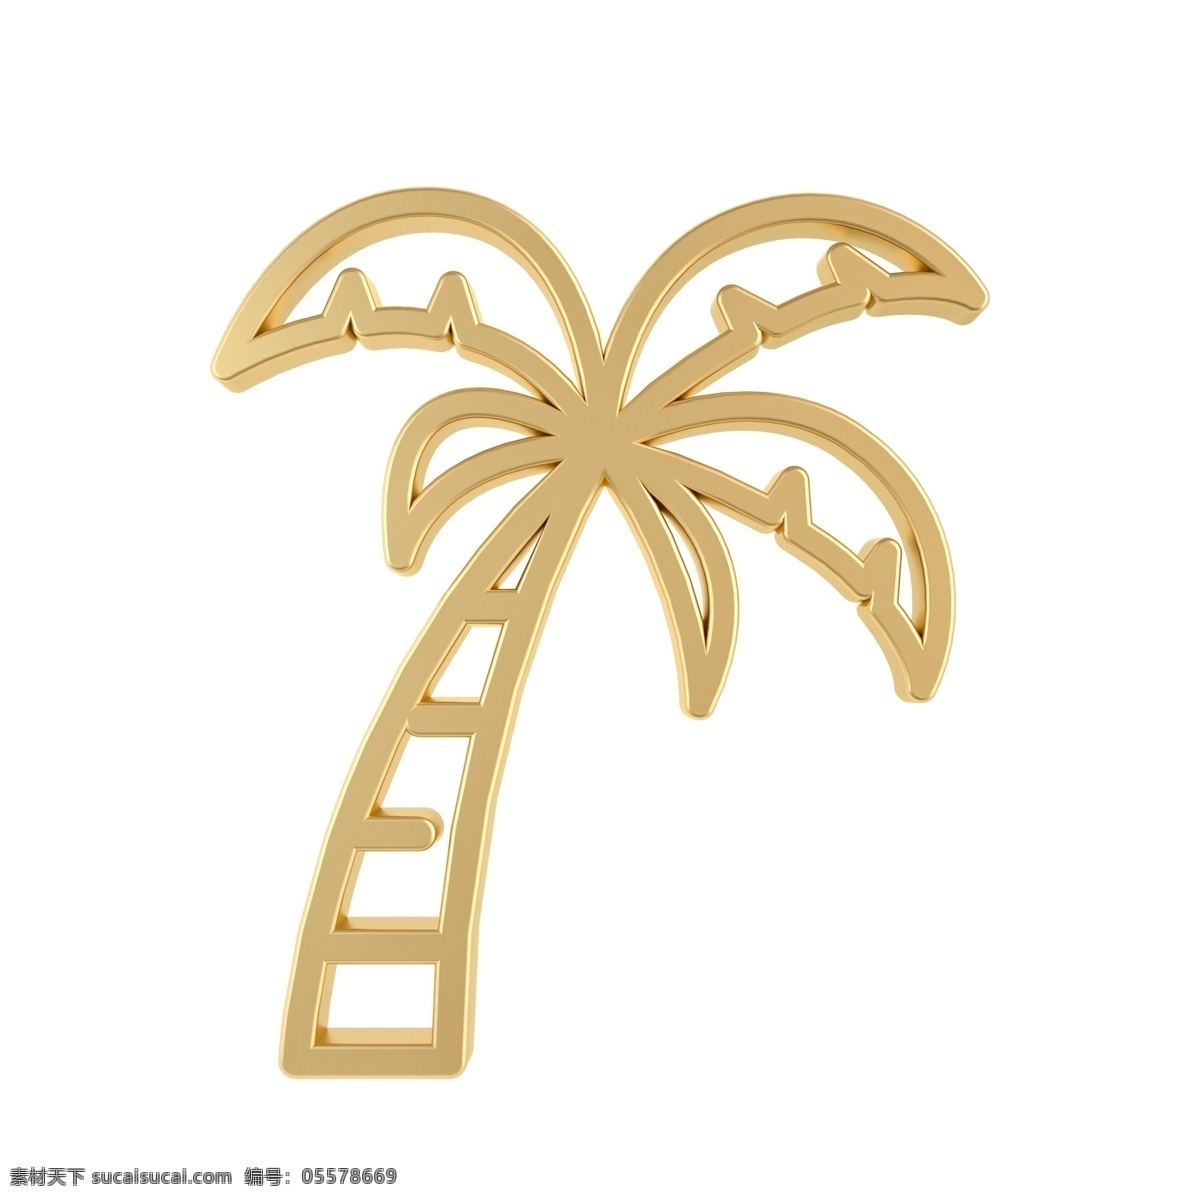 金属 质感 夏日 椰子树 图标 黄金 金属质感 夏季常用图标 立体